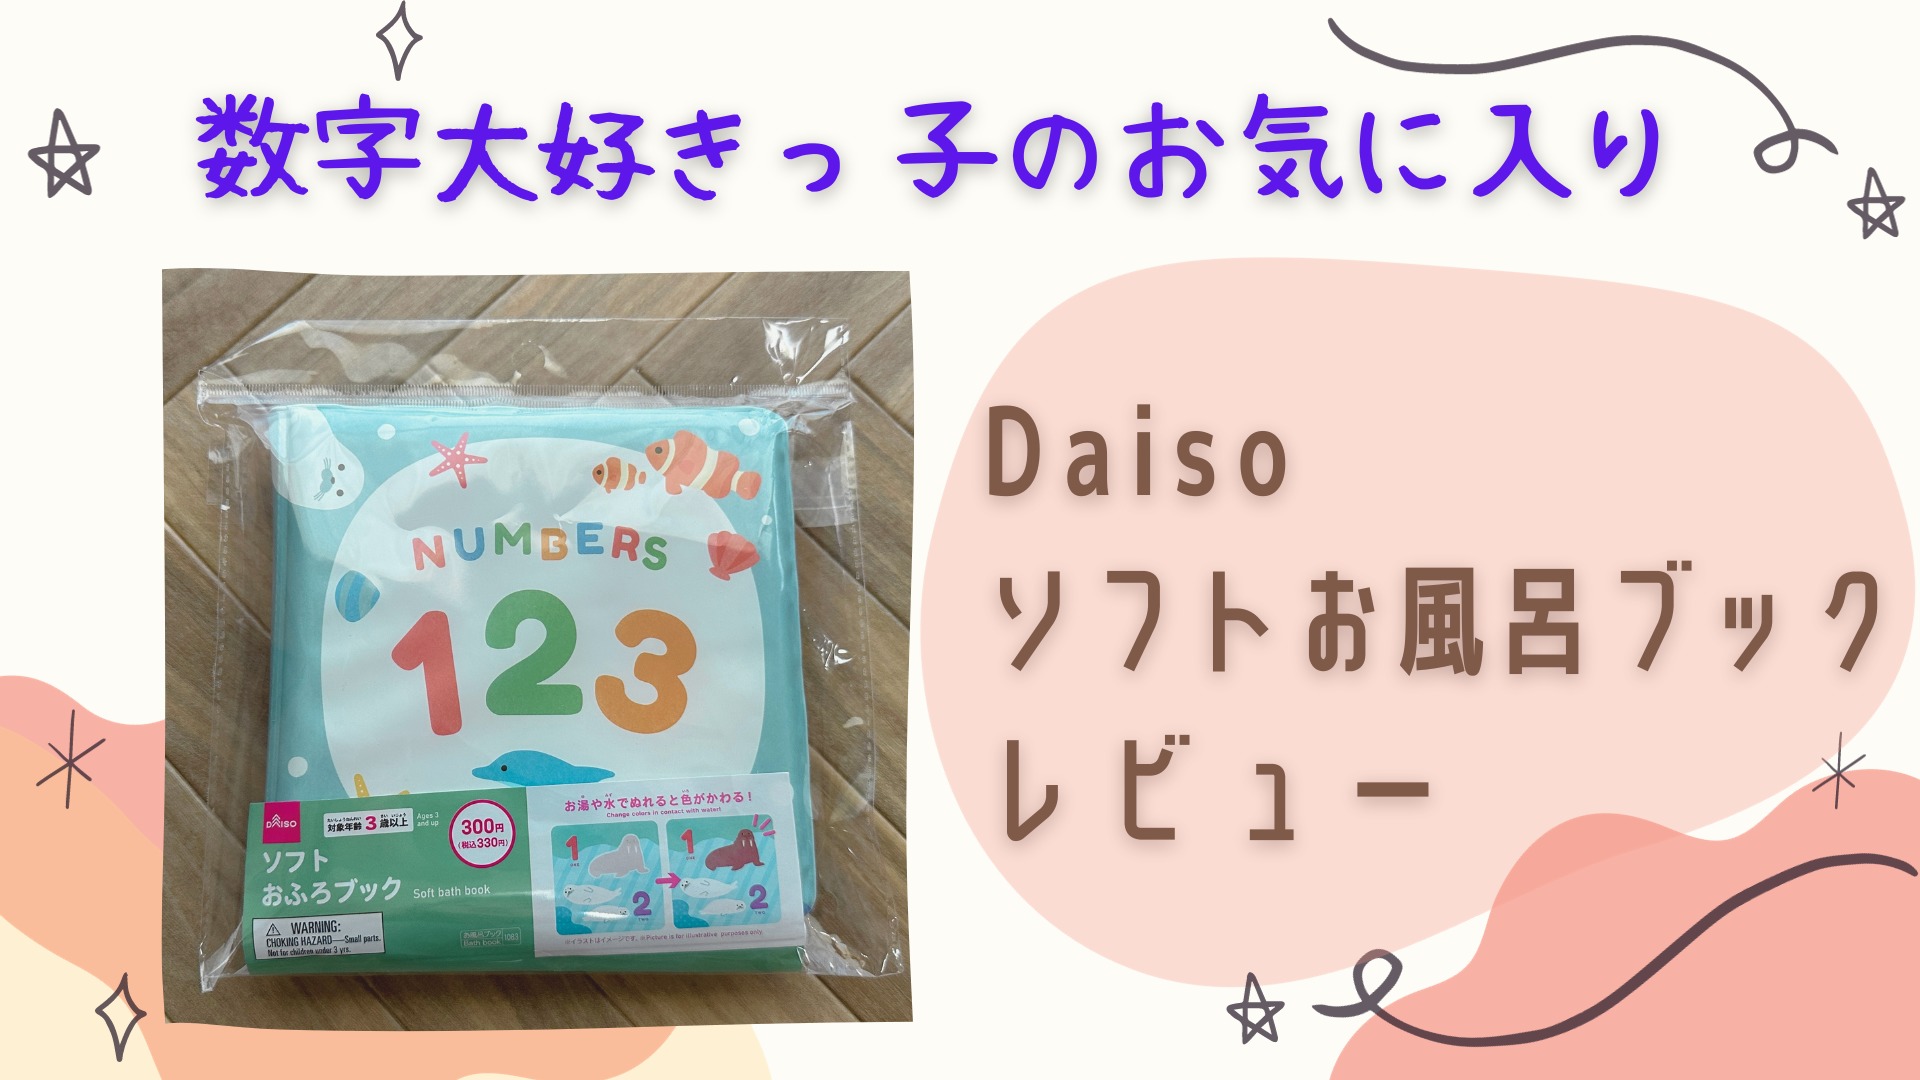 数字大好きっ子のお気に入り【Daiso】ソフトお風呂ブック レビュー アイキャッチ画像